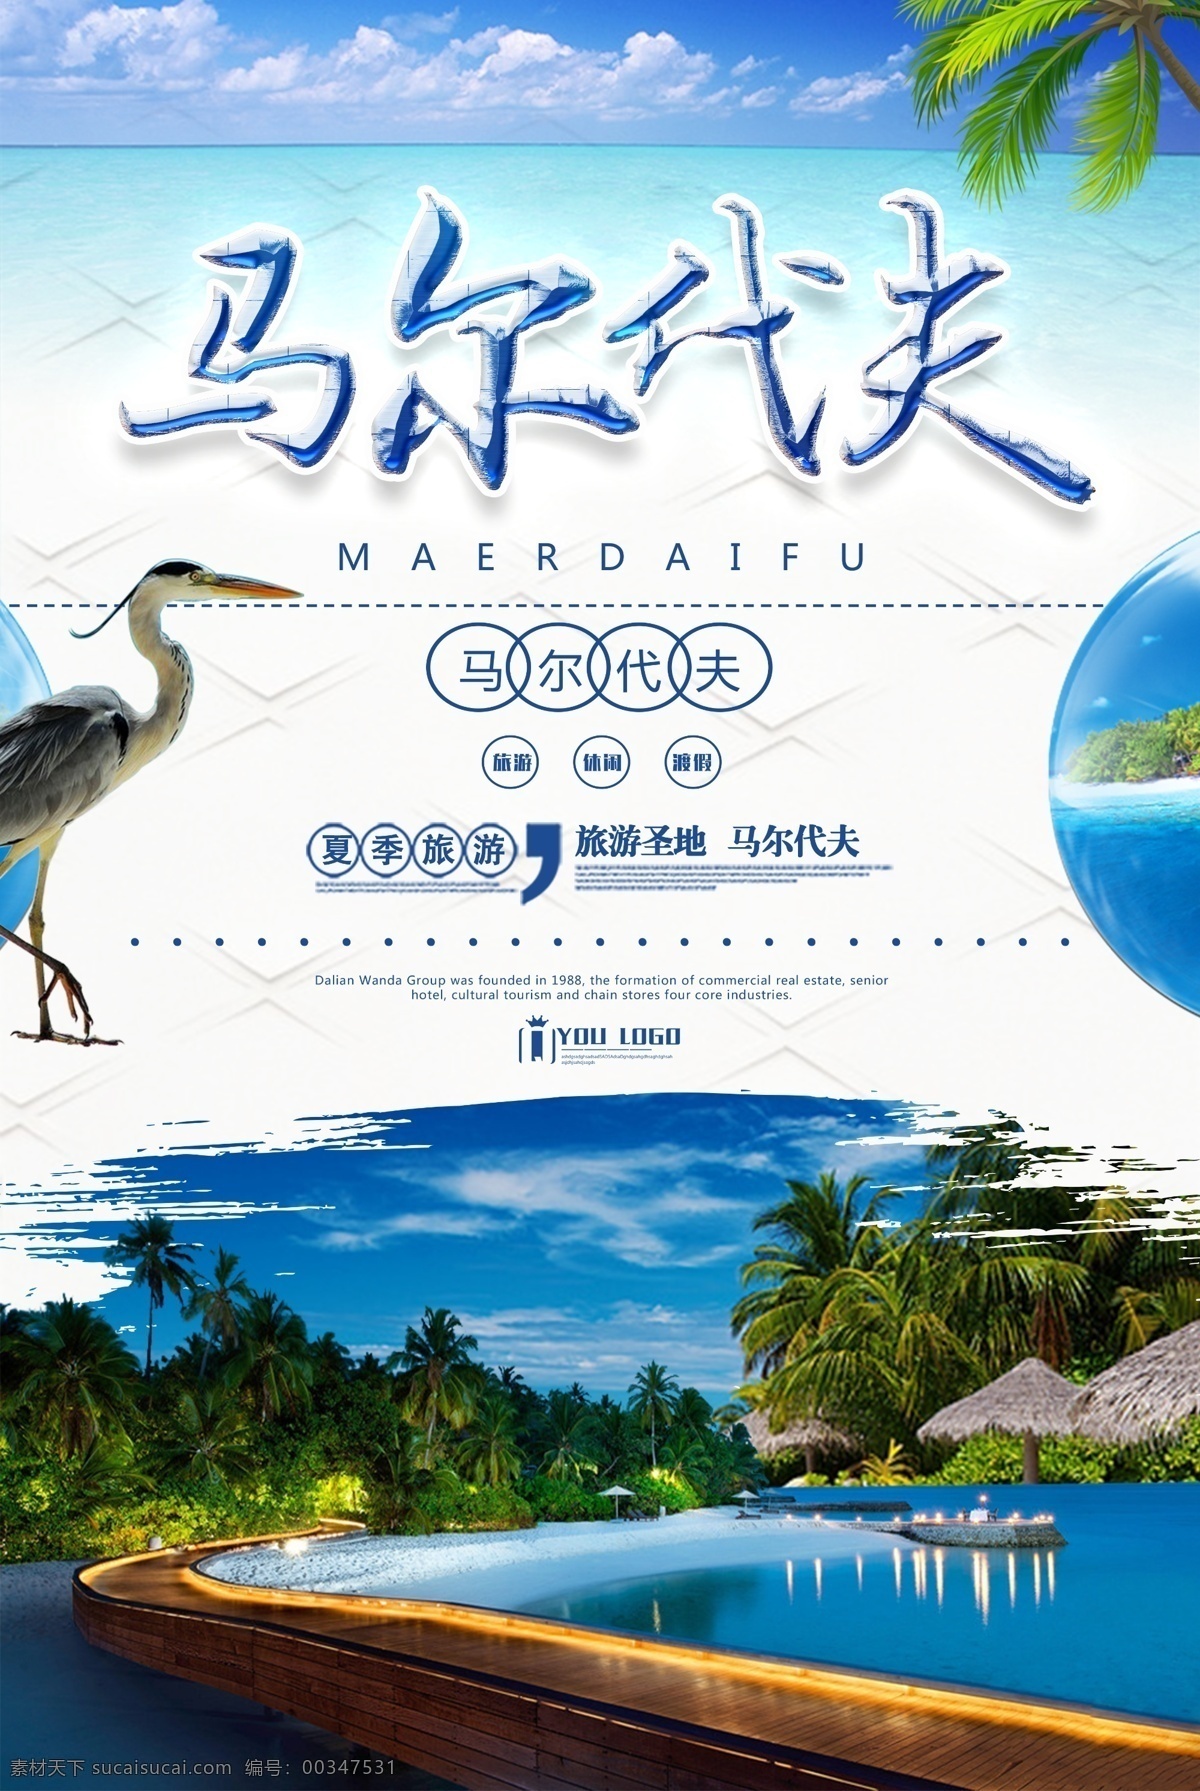 夏季 马尔代夫 旅游 宣传海报 旅游海报 海边 蓝天 海滩 夏季旅游 旅游宣传海报